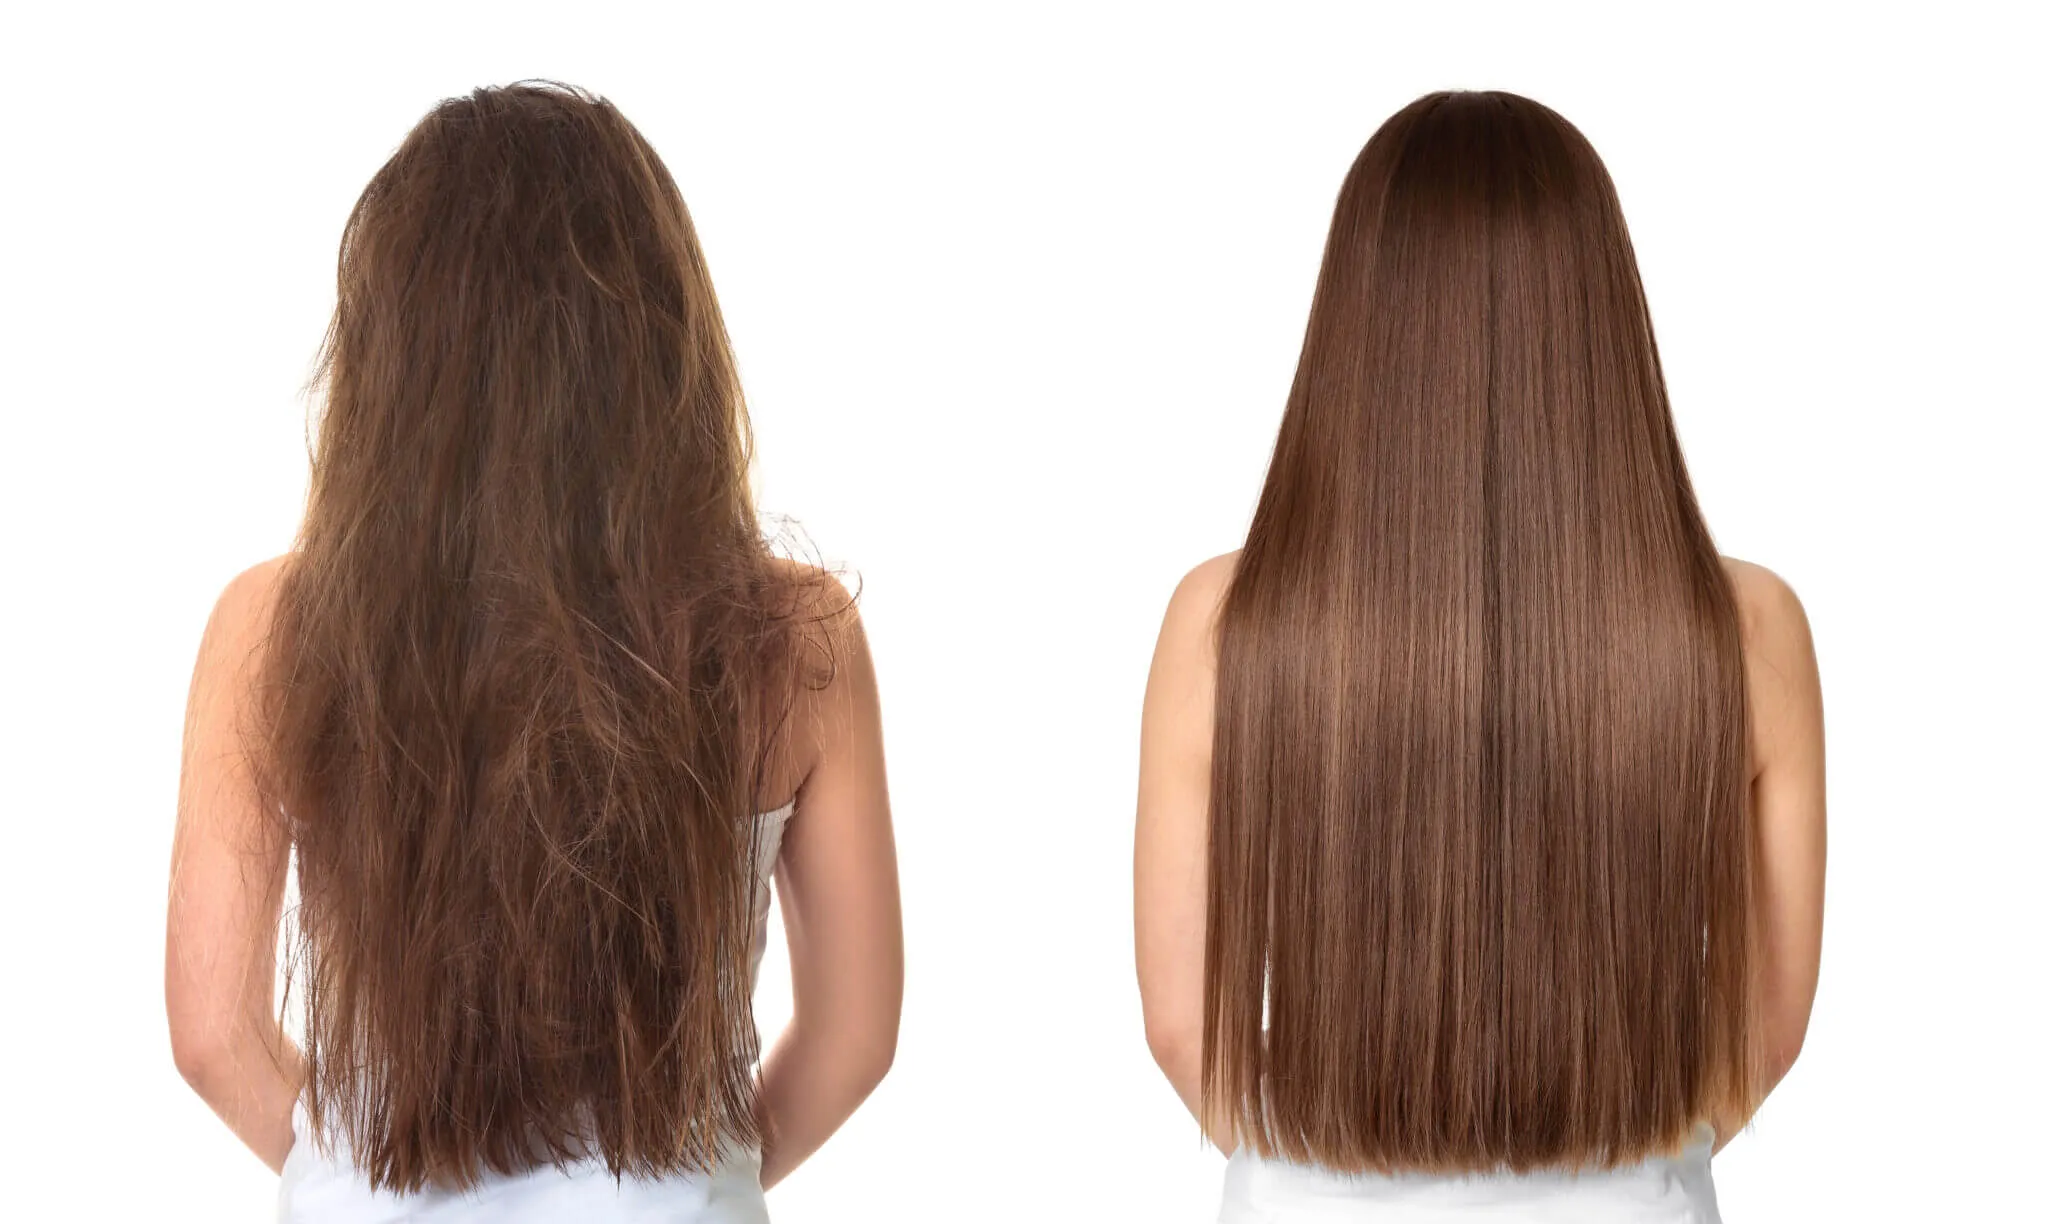 Ефект від каутеризації волосся – до та після